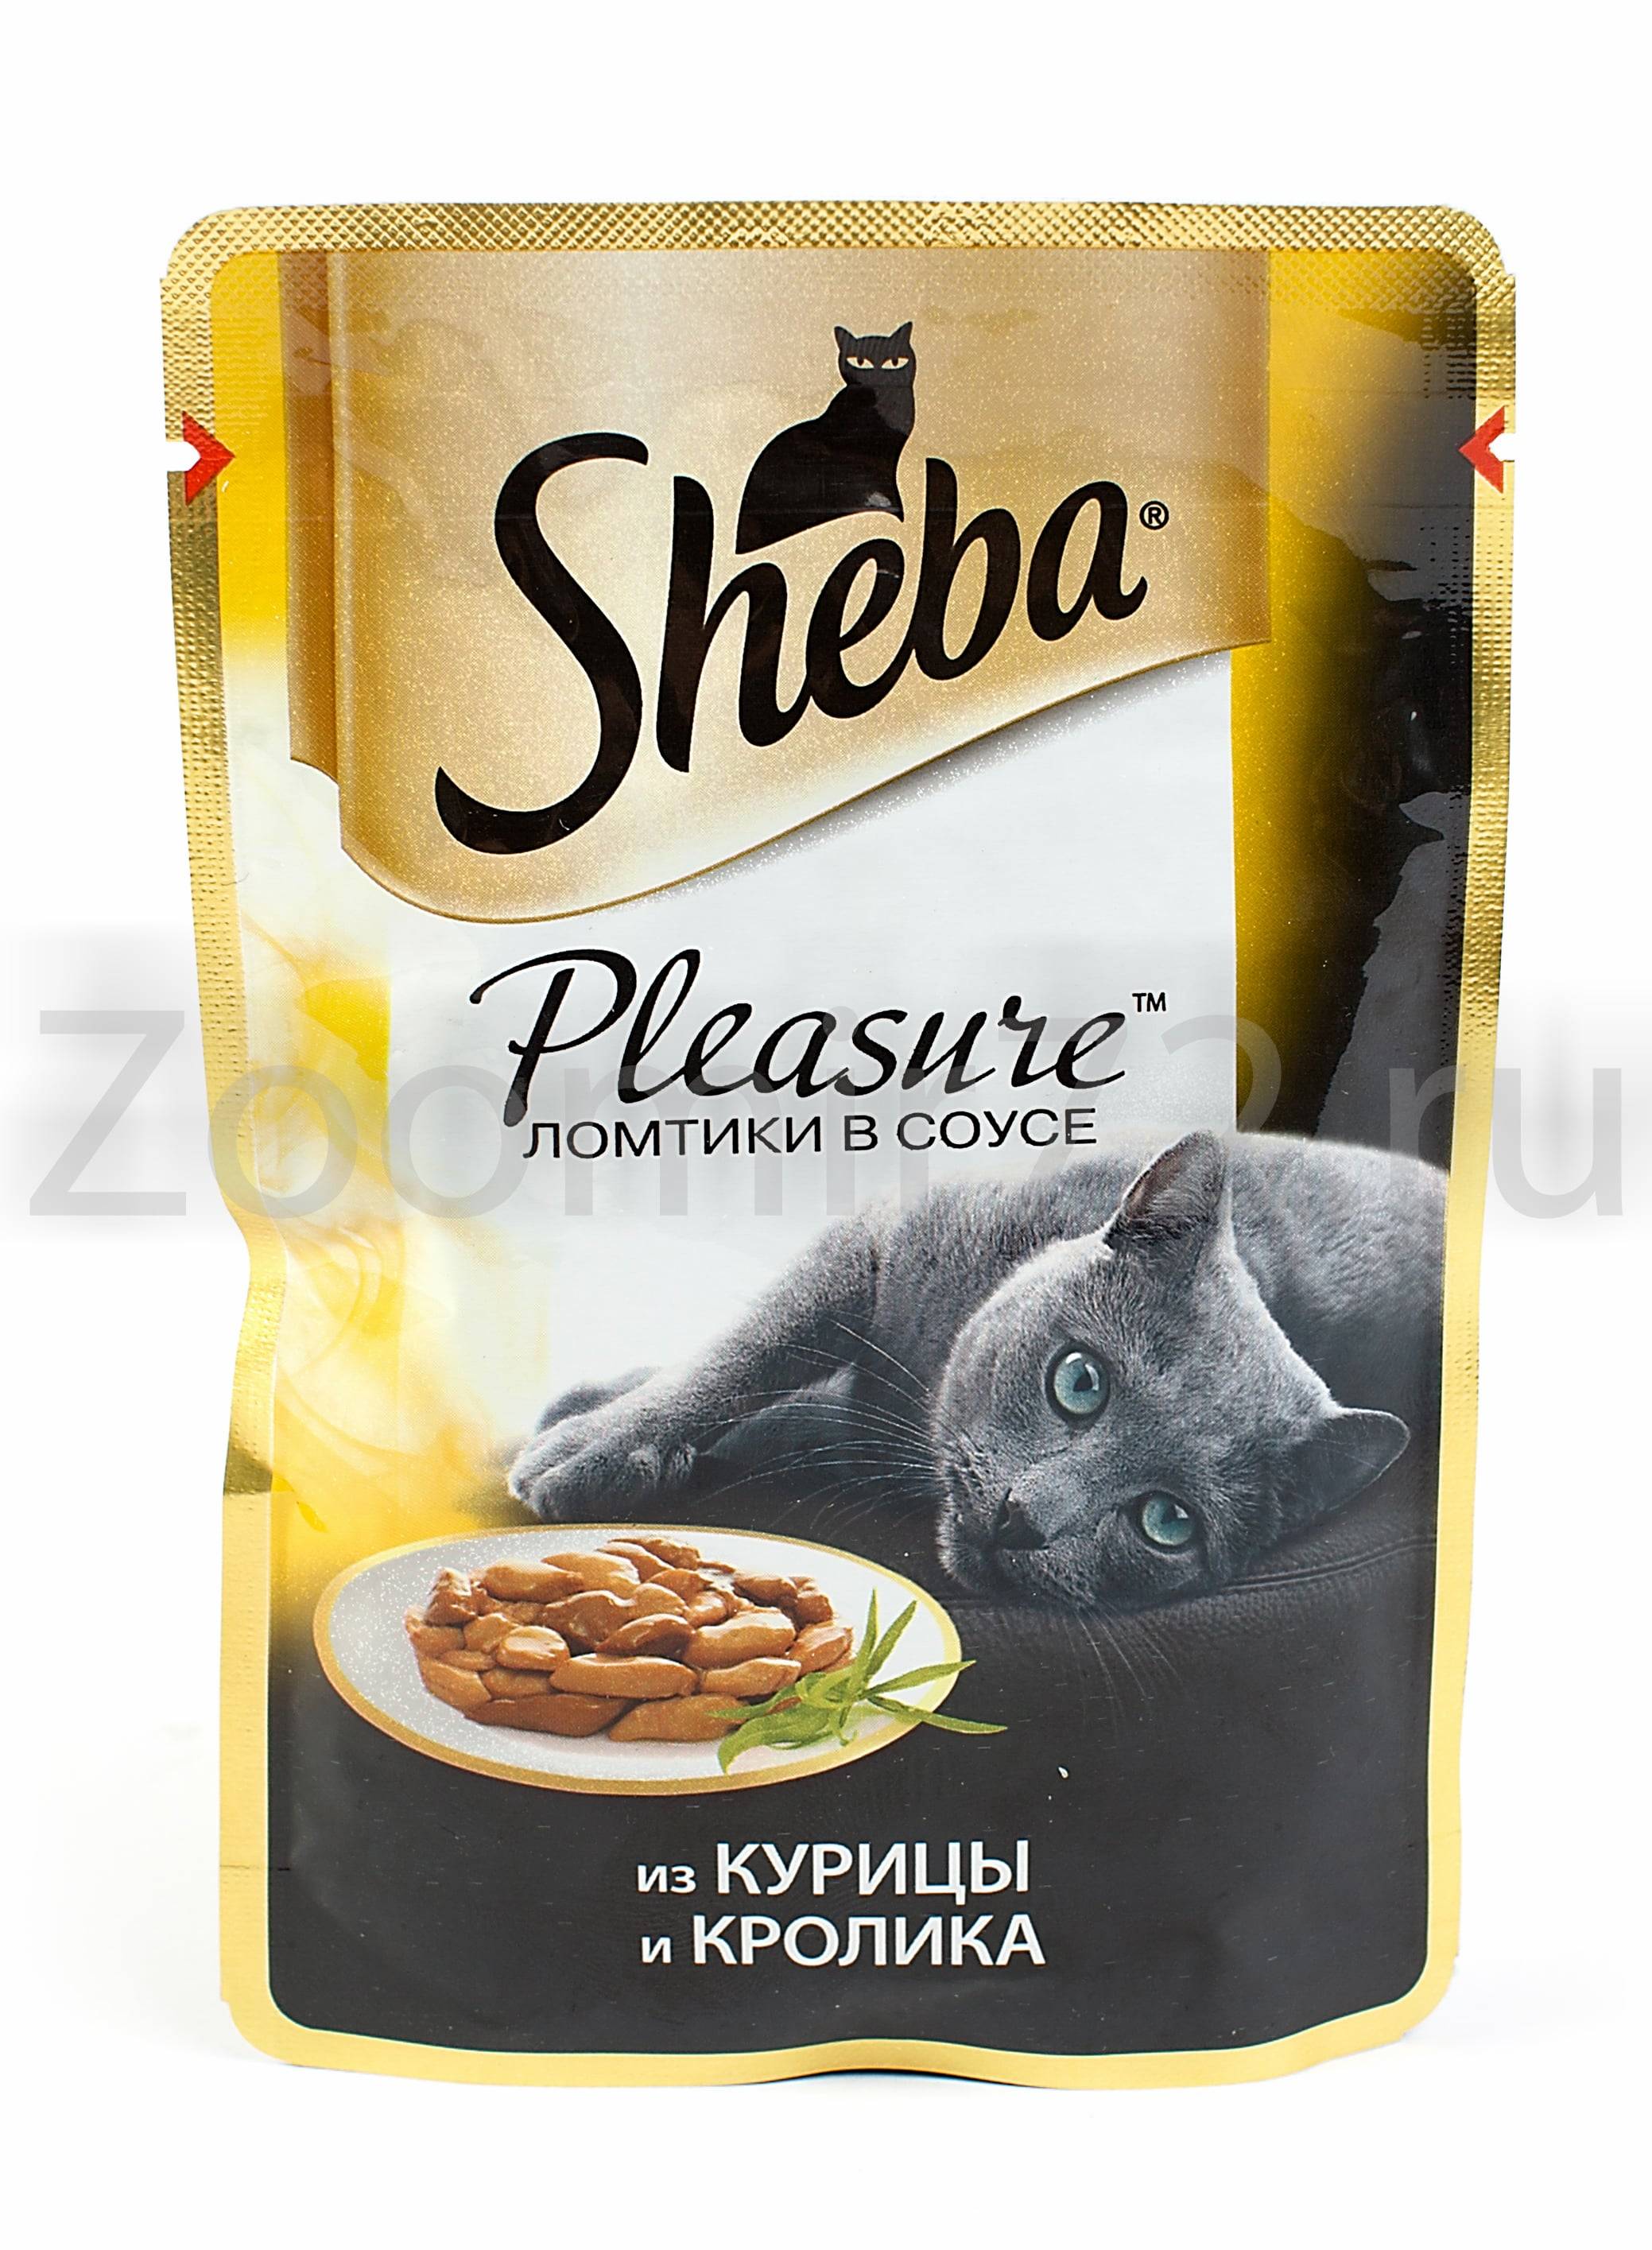 Sheba (шеба) — производитель консервированных кормов для кошек премиум класса